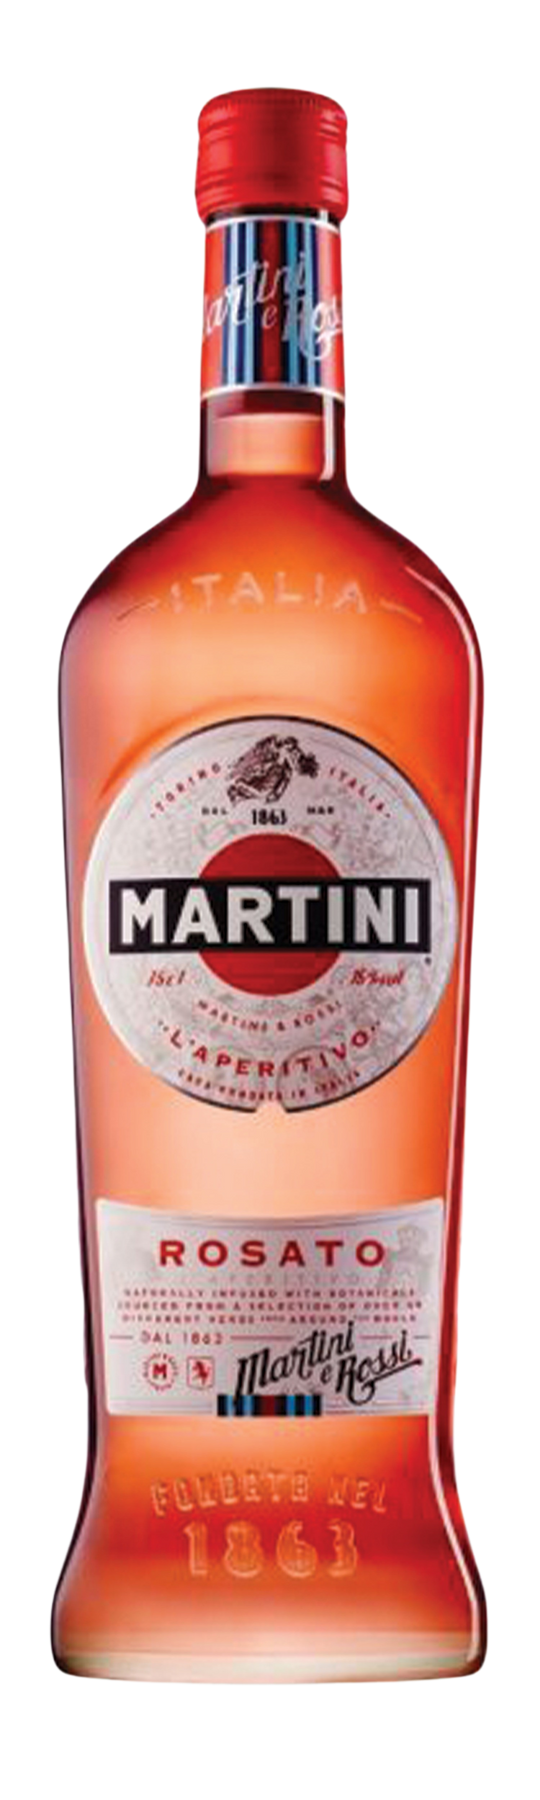 Martini Rosato 15% 75cl Vermouth di Torino